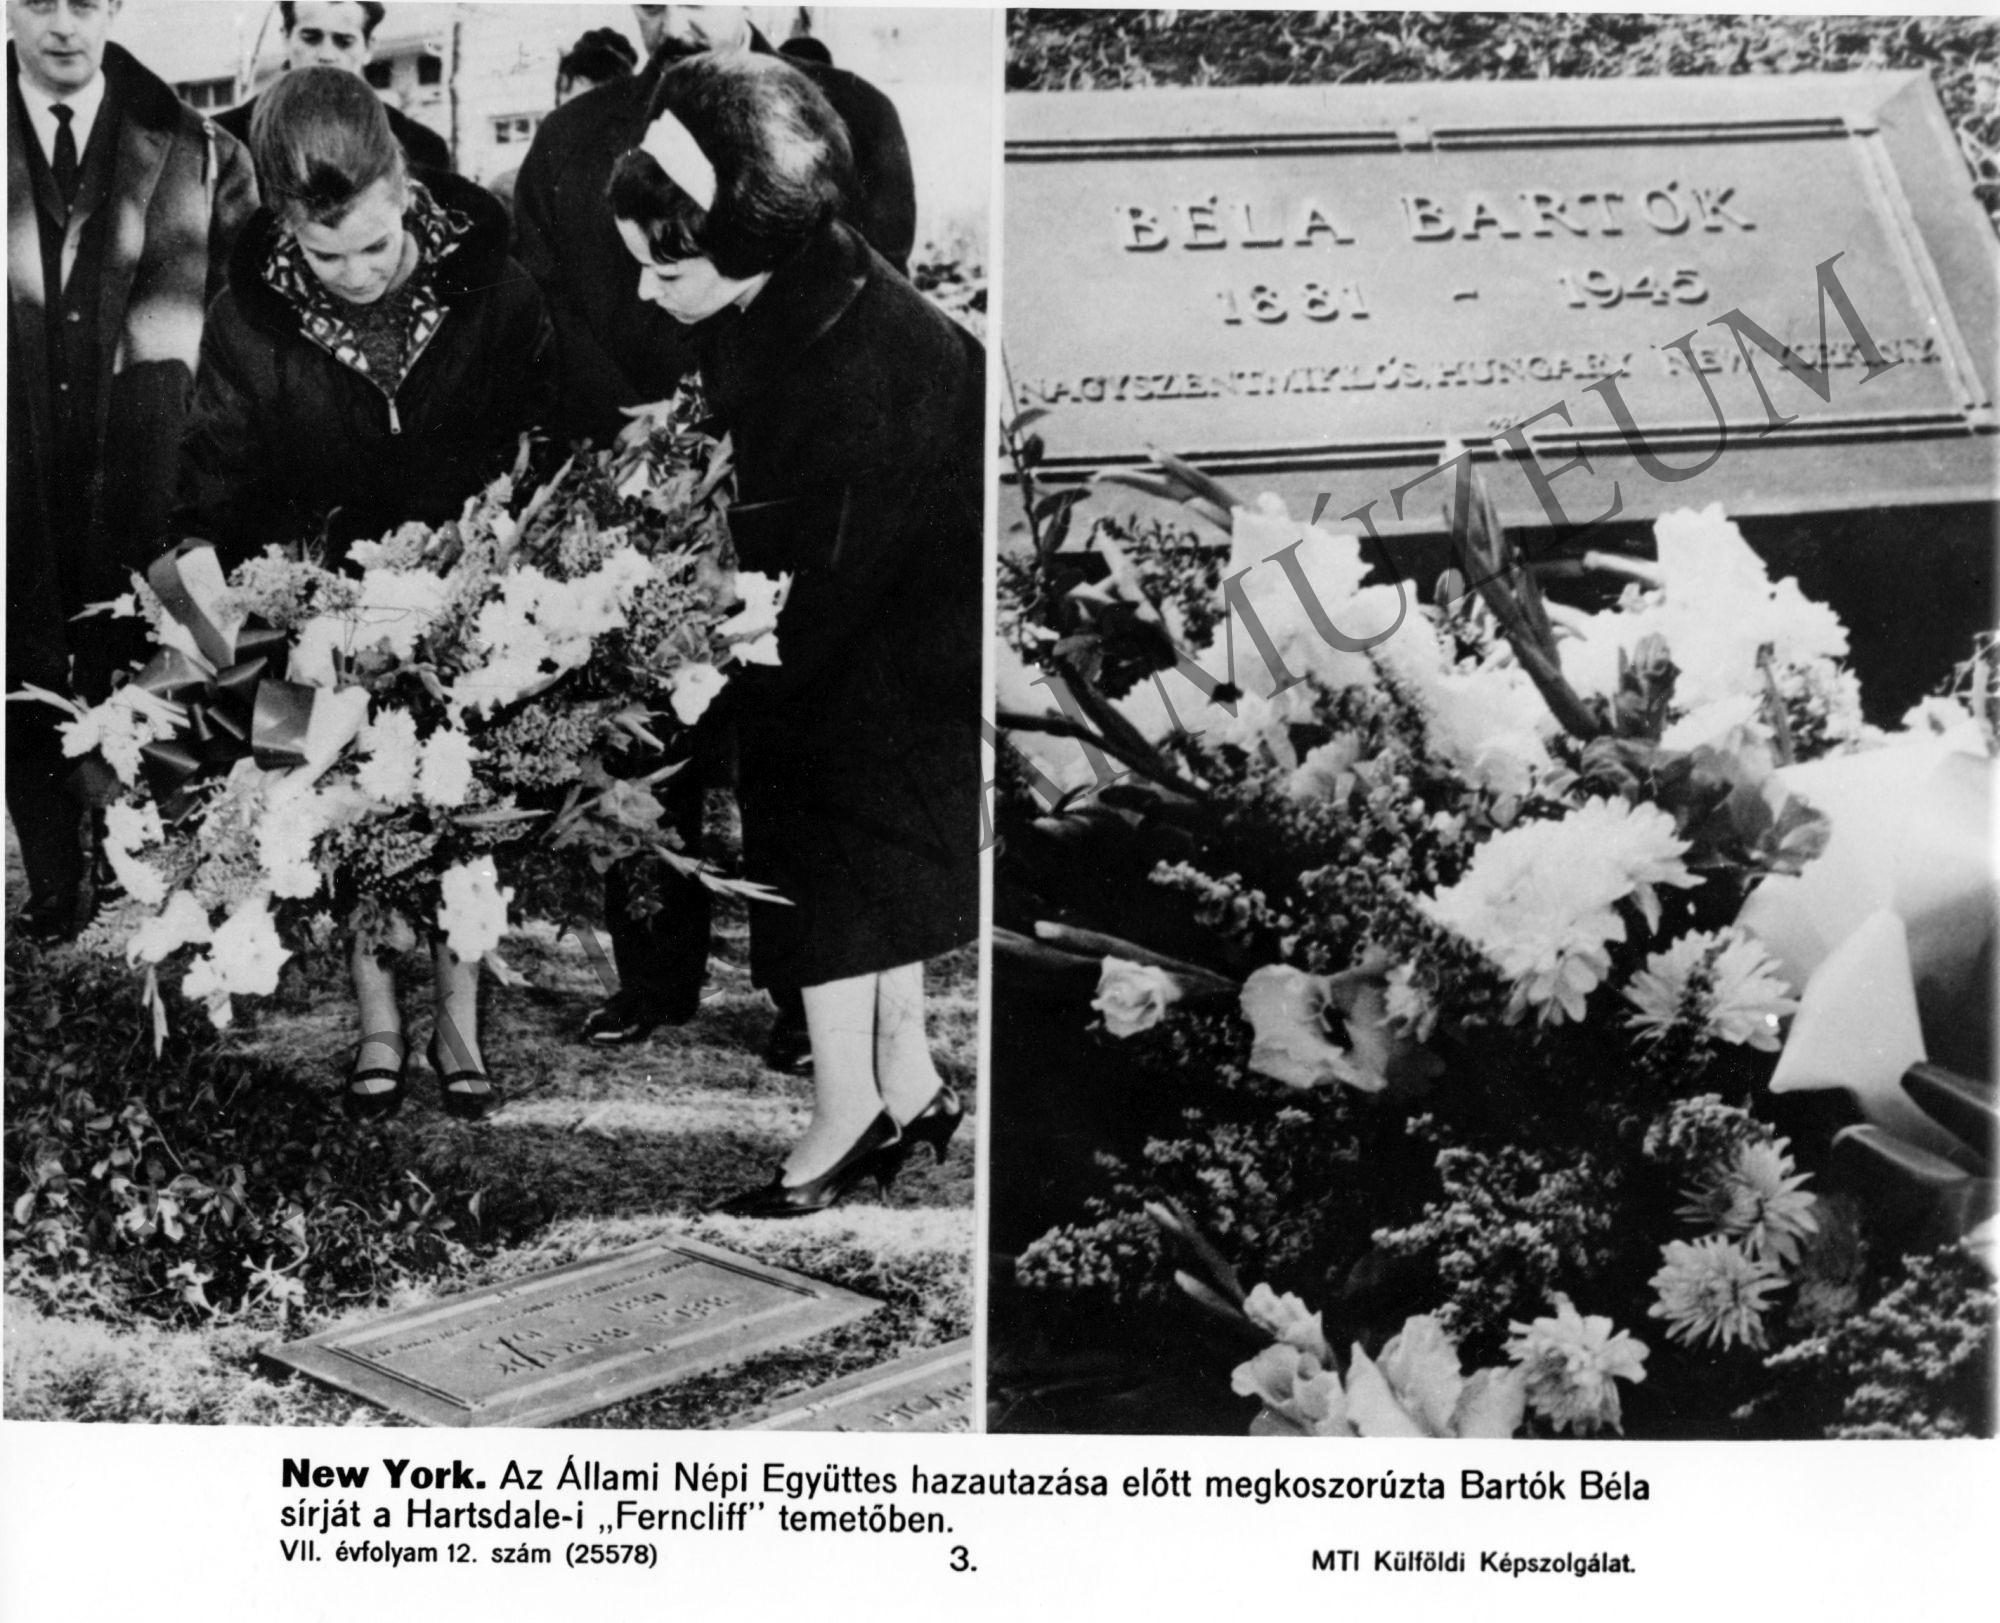 1. Az Állami Népi Együttes hazautazása előtt megkoszorúzta Bartók Béla sírját 2. Bartók megkoszorúzott sírja a Hartsdale-i "Ferncliff" temetőben, New Yorkban (Rippl-Rónai Múzeum CC BY-NC-SA)